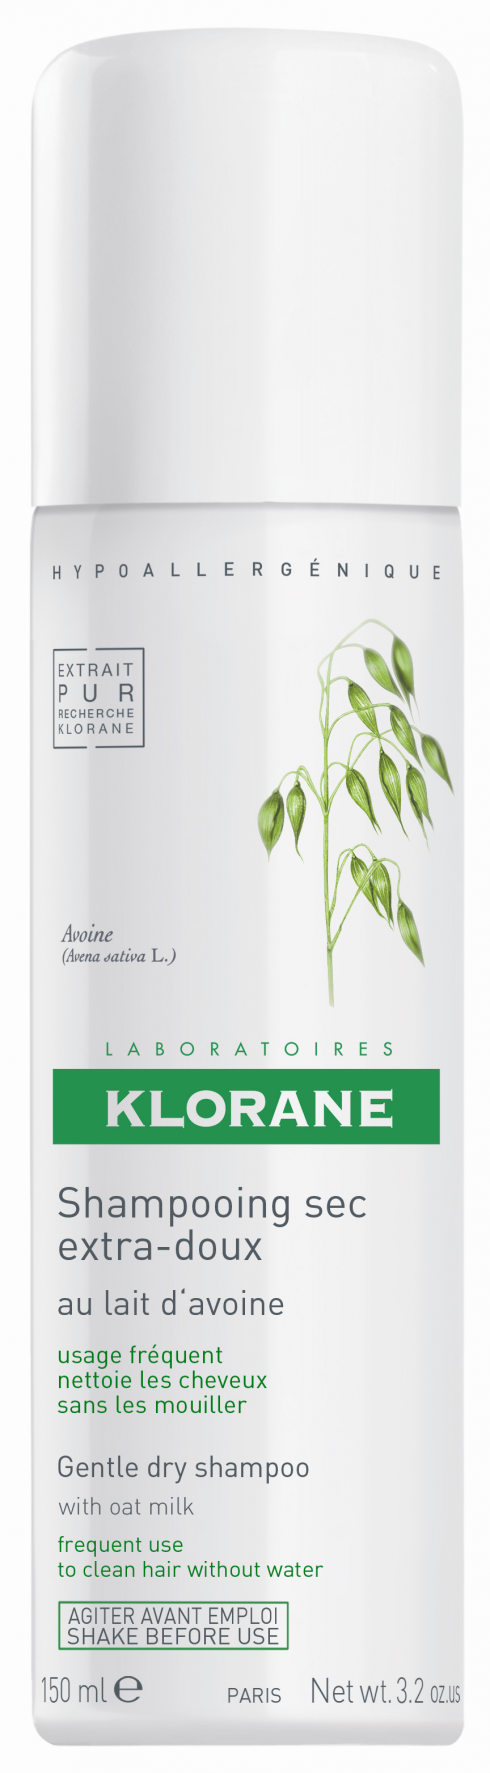 Klorane dry shampoo